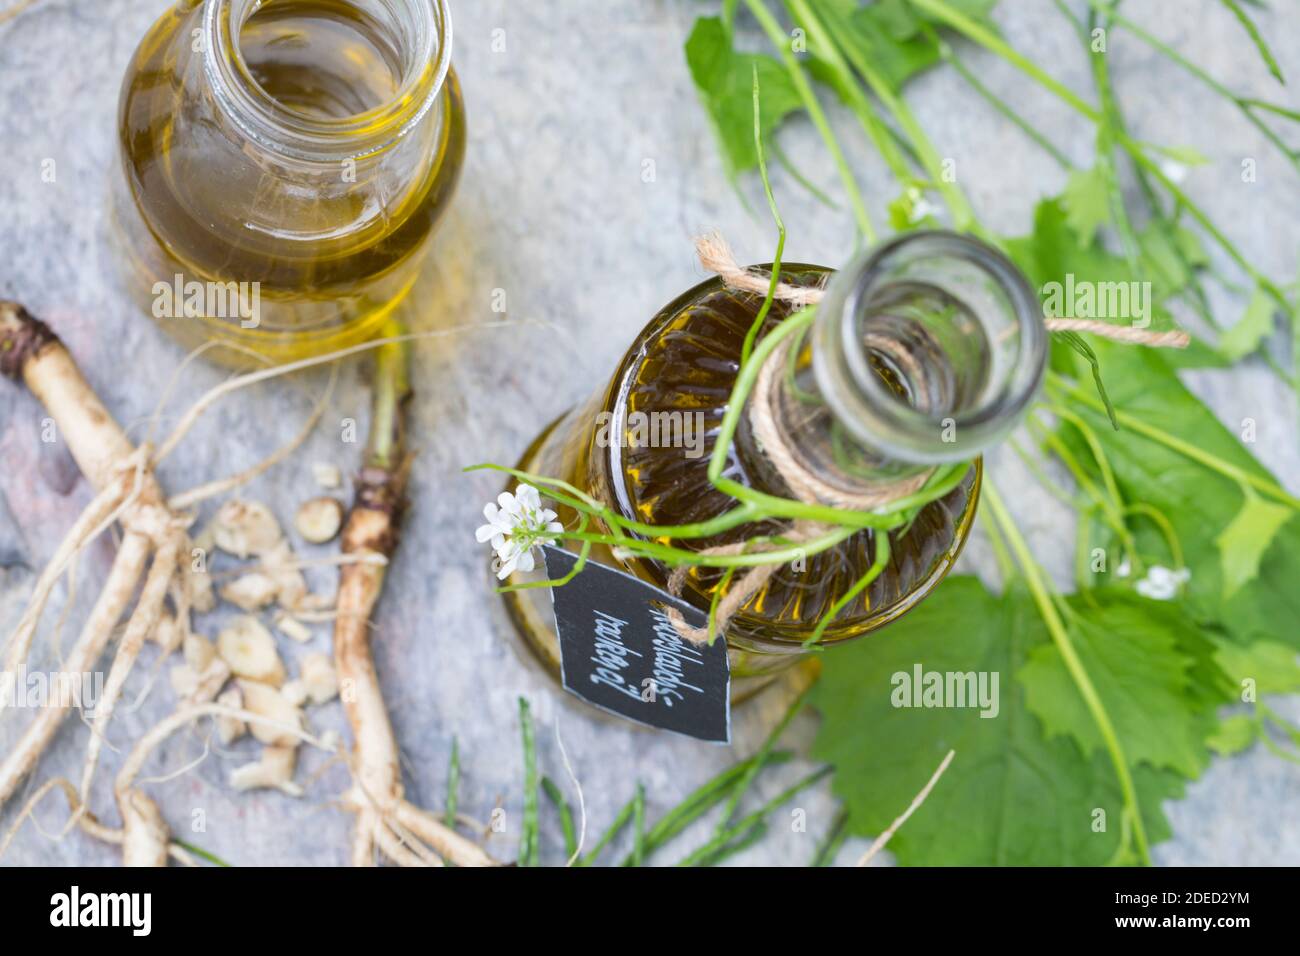 Senape all'aglio, aglio all'orlo, Jack-by-the-Hedge (Alliaria petiolata), olio d'aglio Hedge, Germania Foto Stock